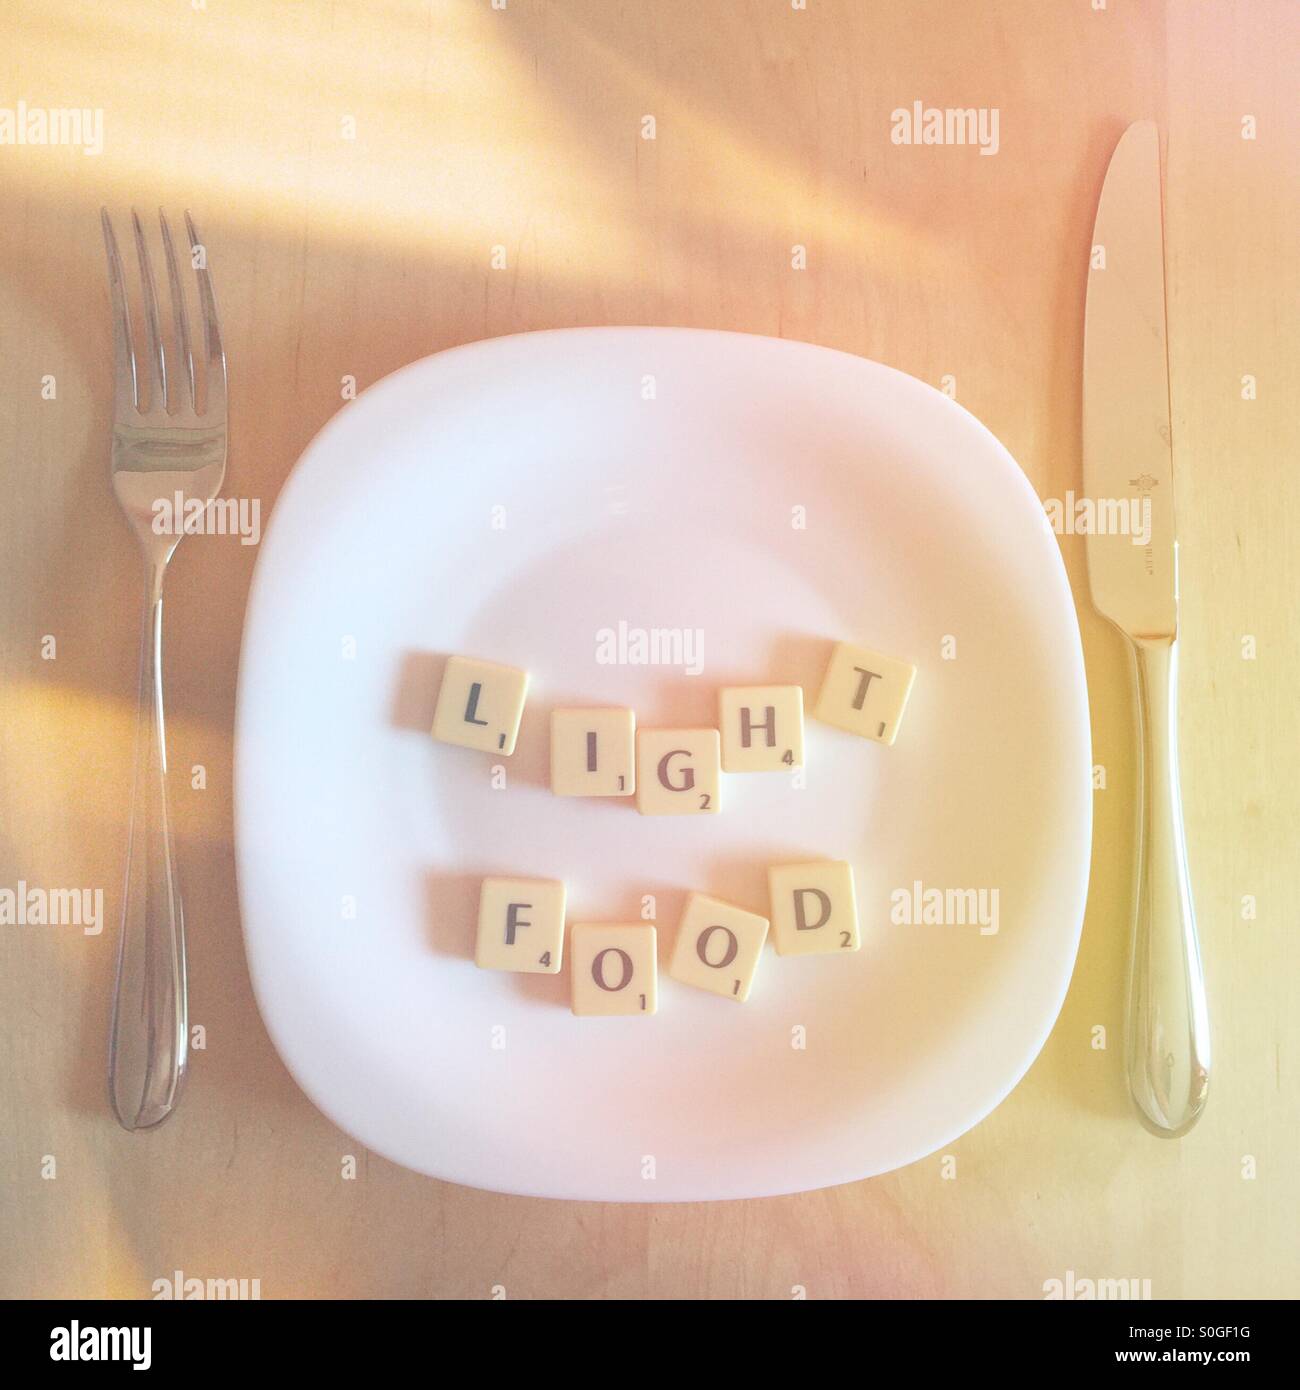 Platte mit dem Scrabble Wörter Licht Essen Stockfoto